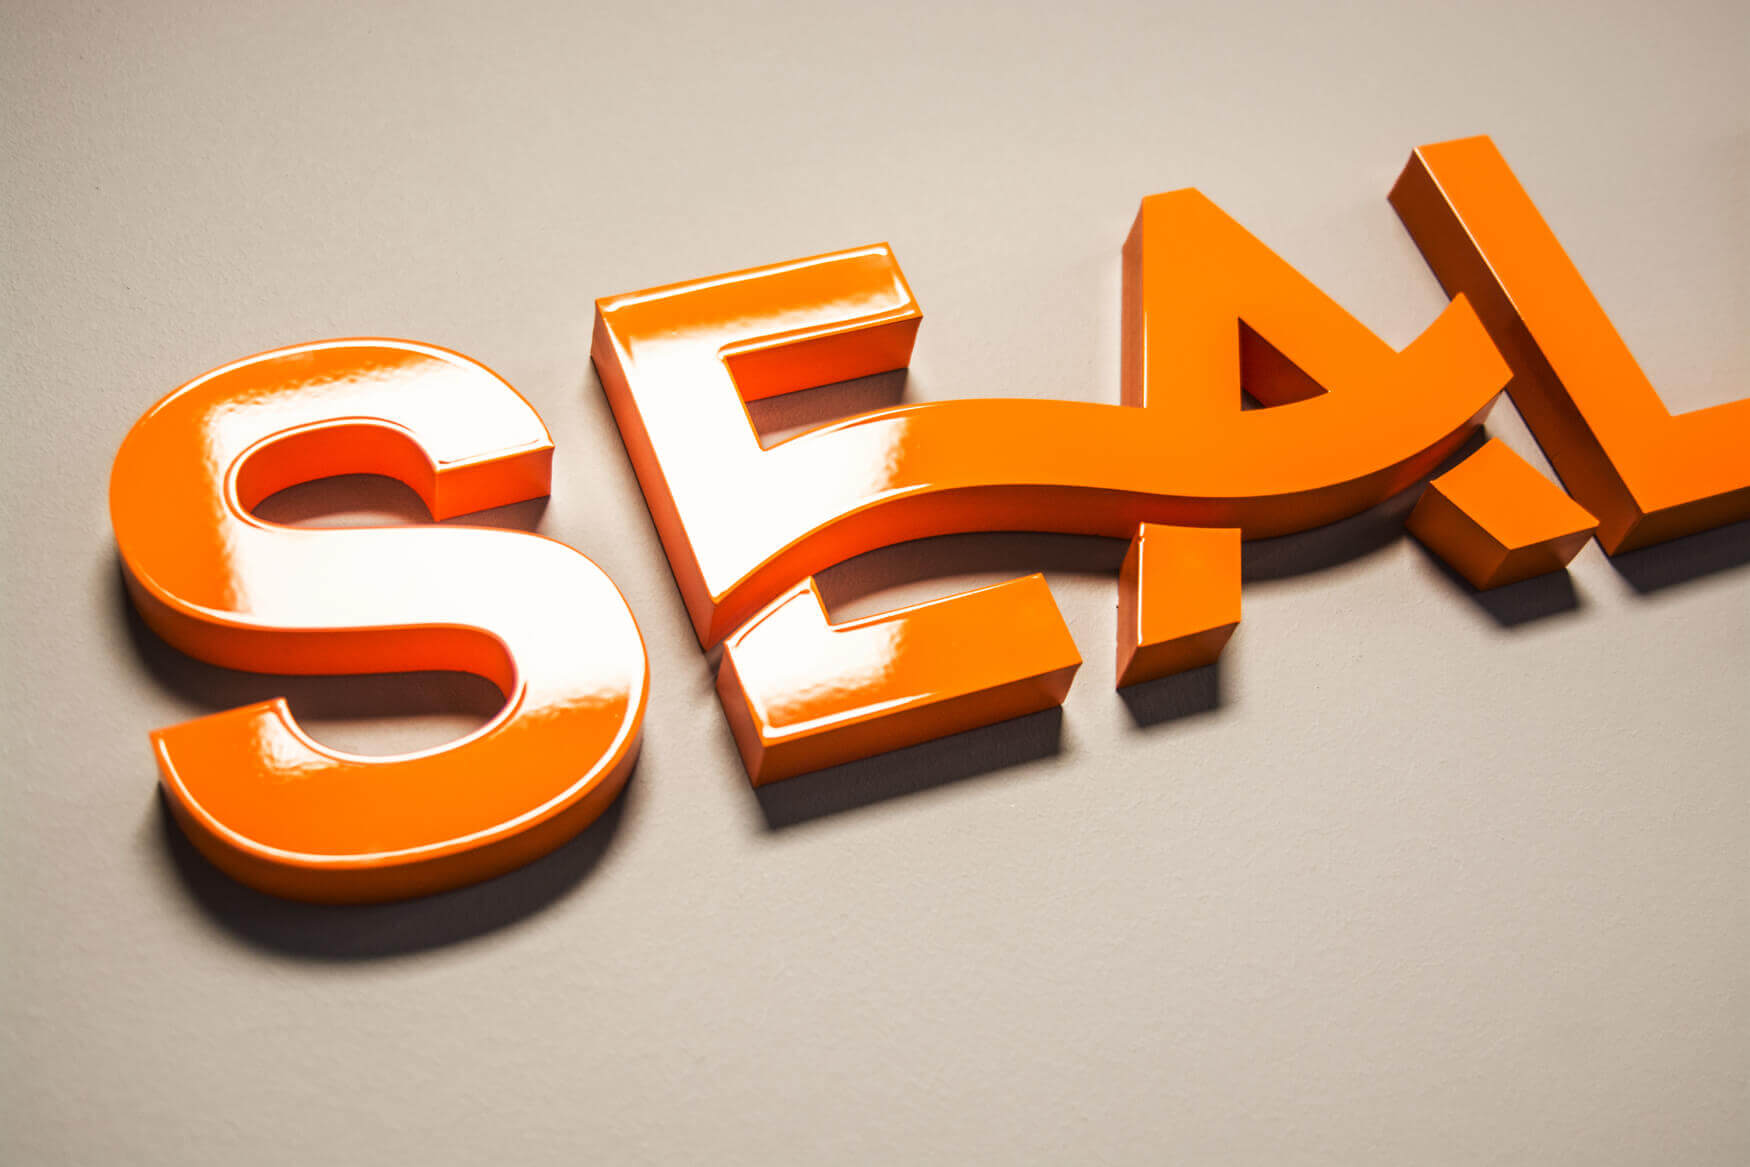 Seeland - Sealand - 3D-Blockbuchstaben auf die Wand gesprüht